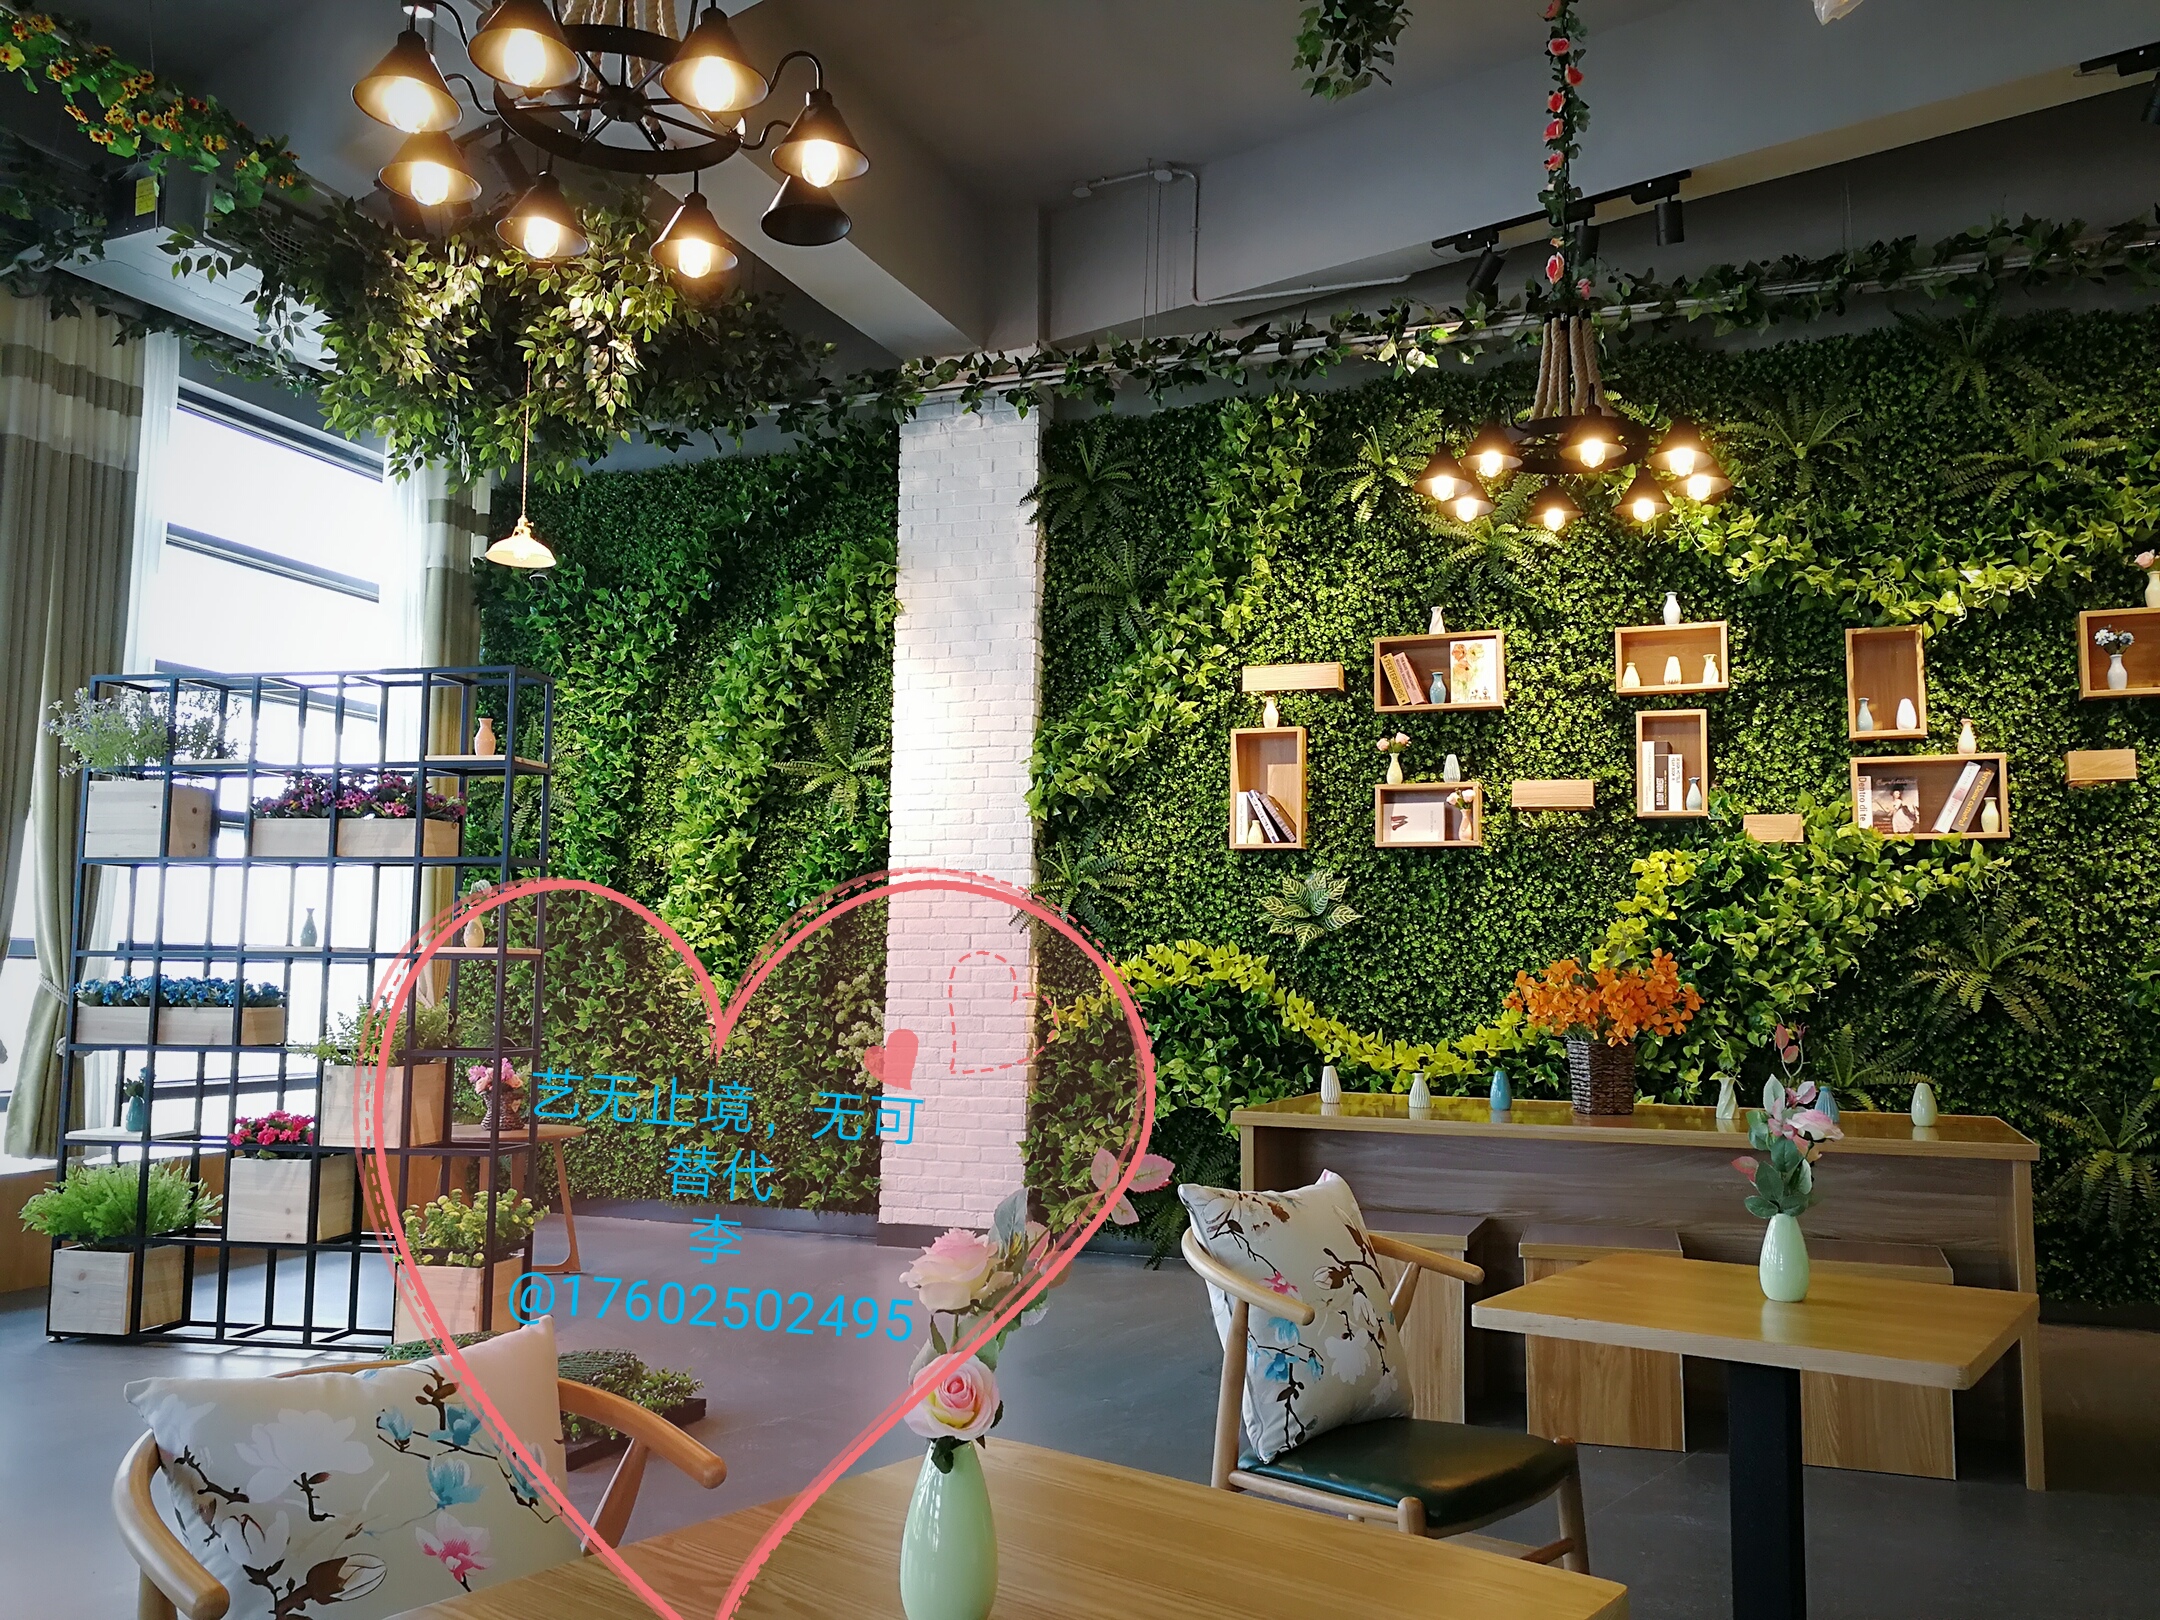 绿植墙，仿真绿植墙，仿真植物墙仿真植物墙绿化墙花墙垂直绿化植物租摆植物配送图片